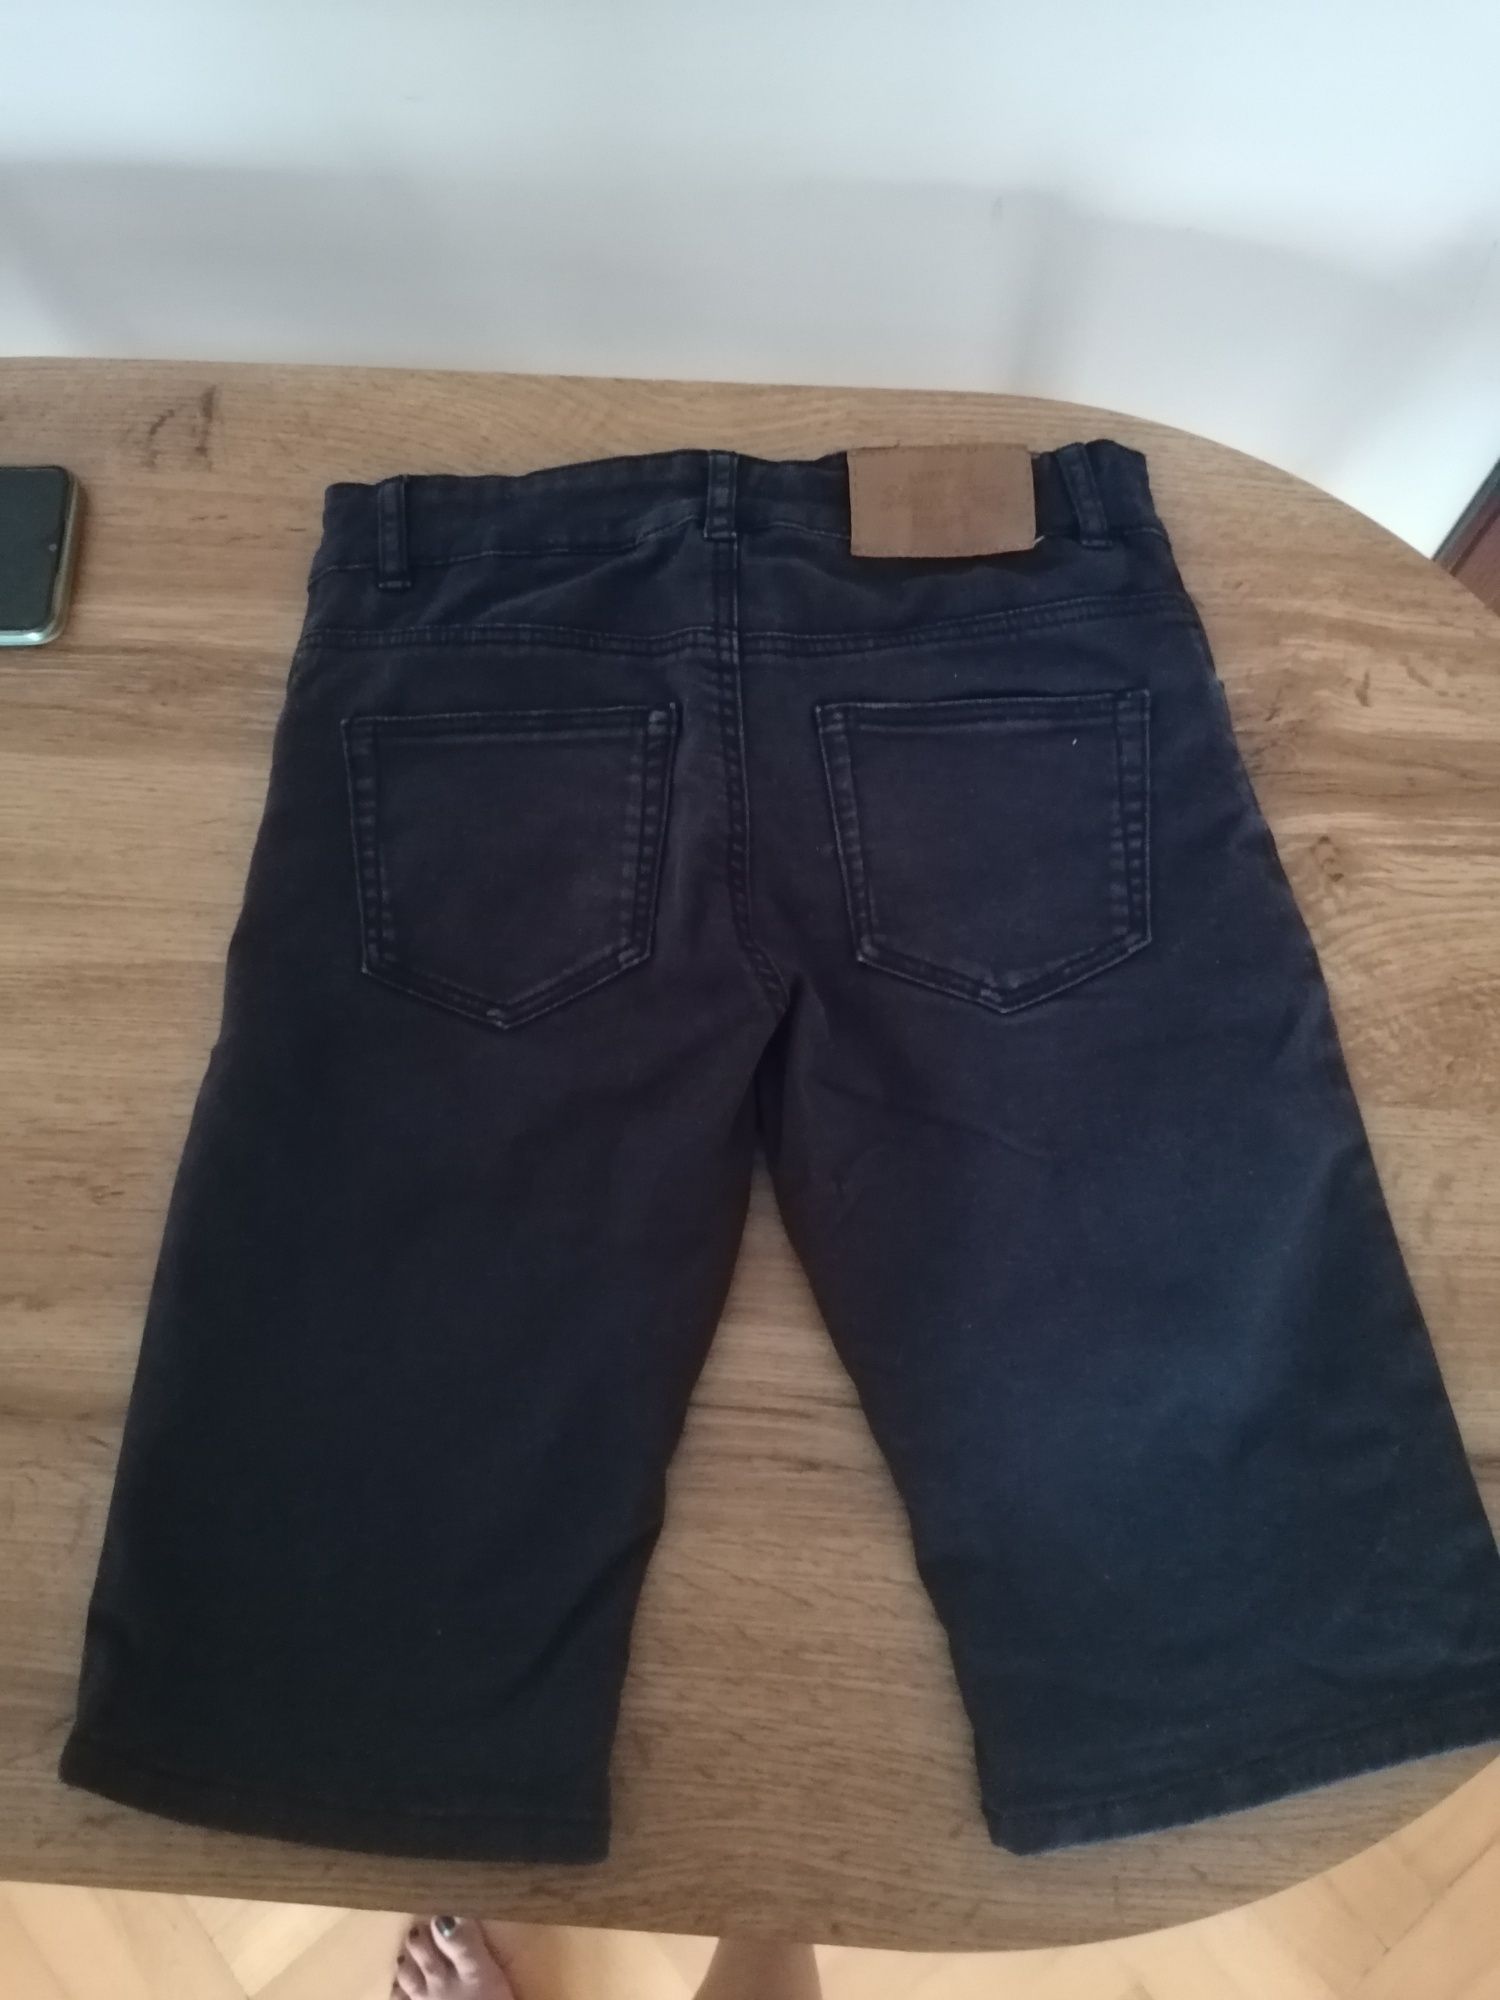 Ciemne/granatowe krótkie jeansowe spodenki h&m